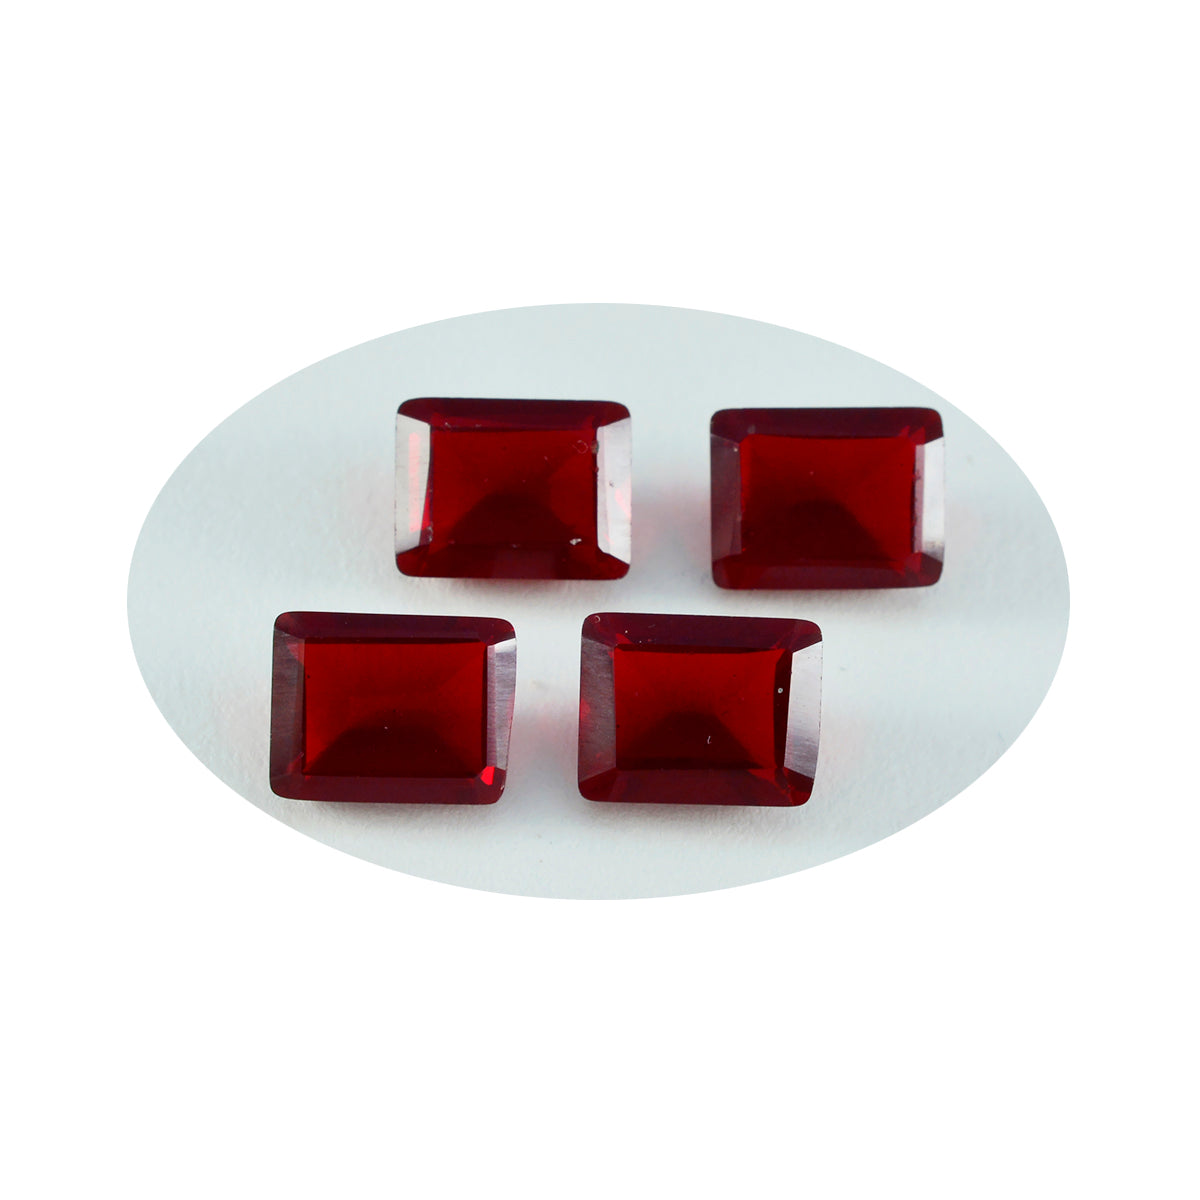 riyogems 1 шт. красный рубин cz ограненный 10x12 мм восьмиугольная форма прекрасное качество россыпь драгоценных камней